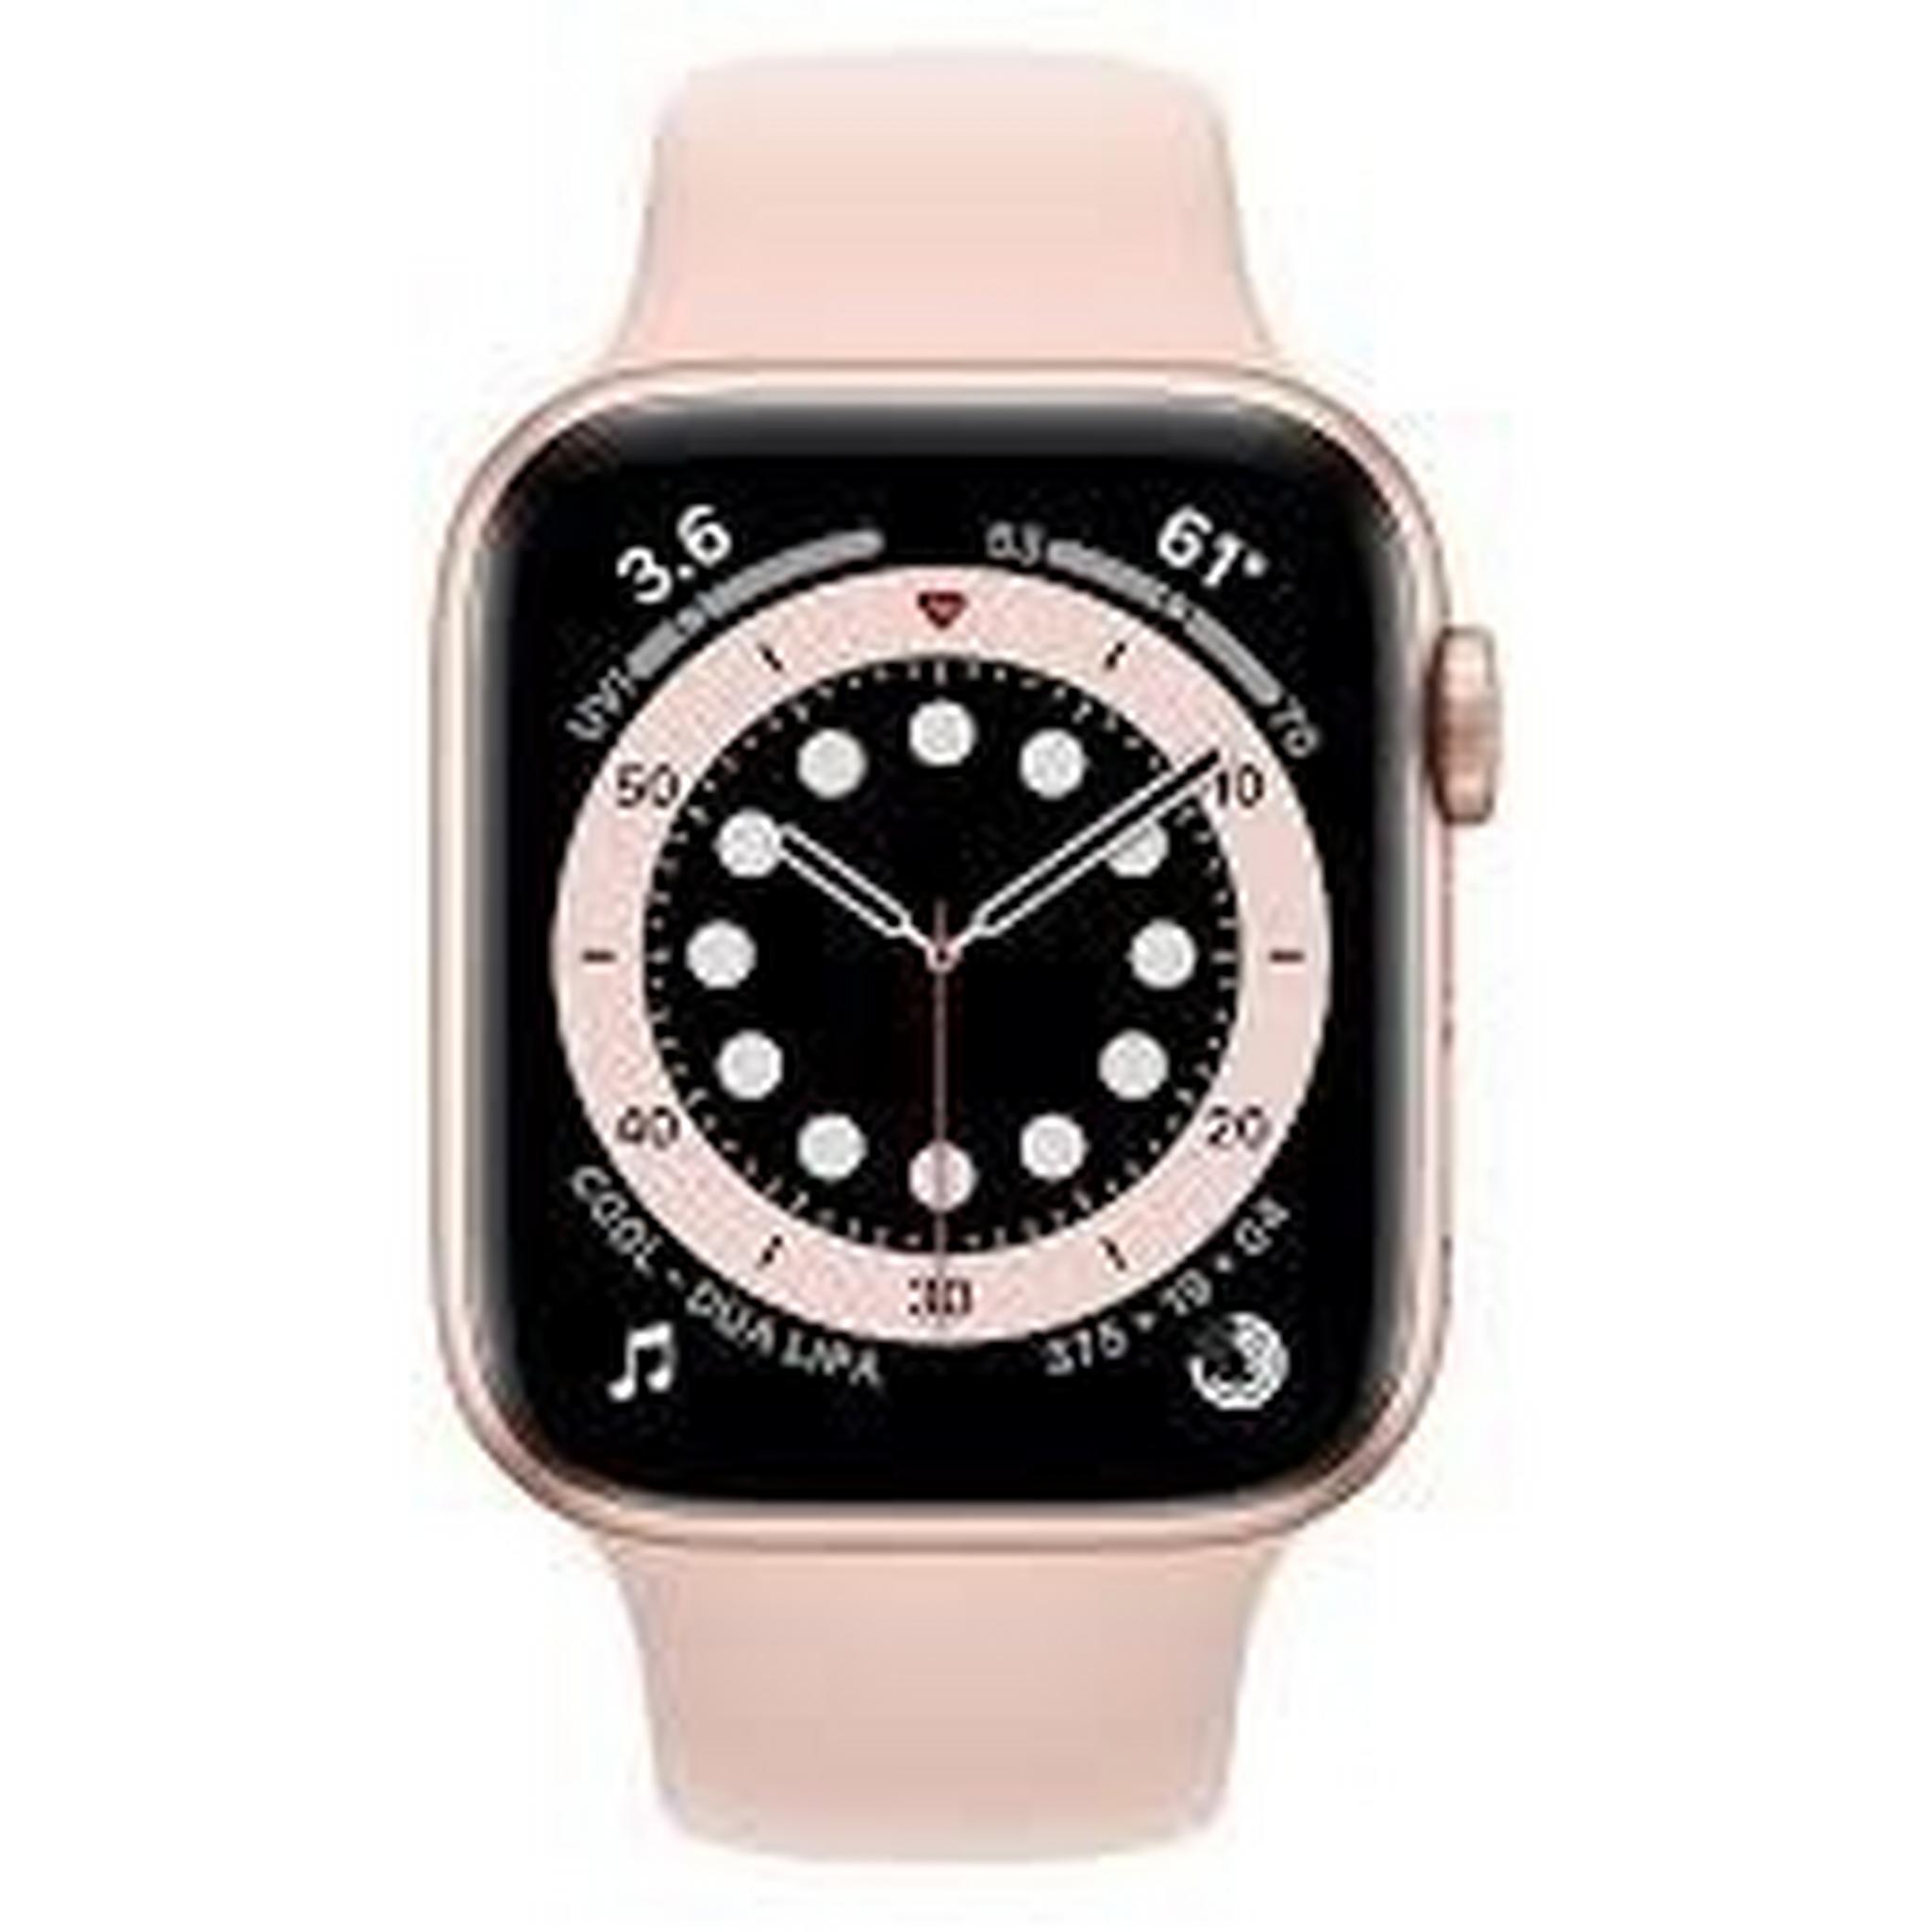 Apple Watch Series 6 GPS 44mm Aluminum Case Smart Watch - Gold / Pink